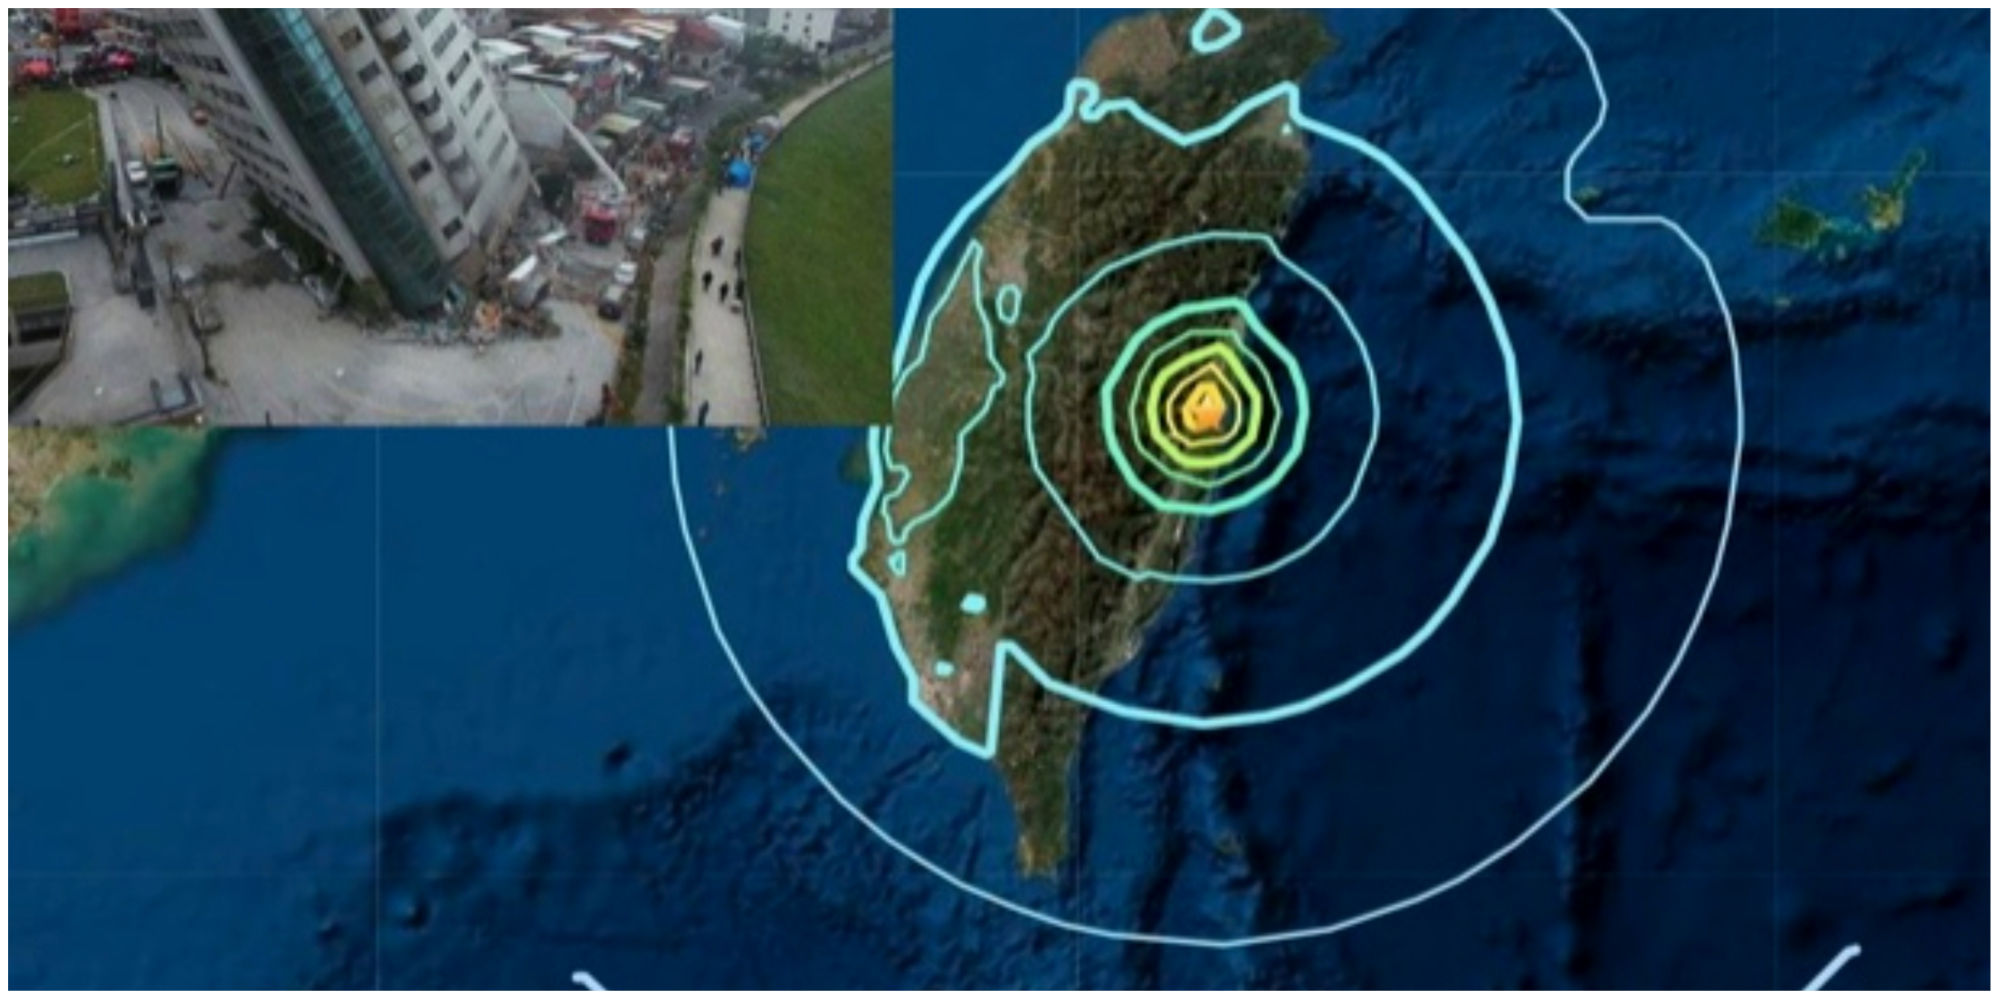  زلزله 7.2 ریشتری تایوان/ هشدار سونامی صادر شد+فیلم